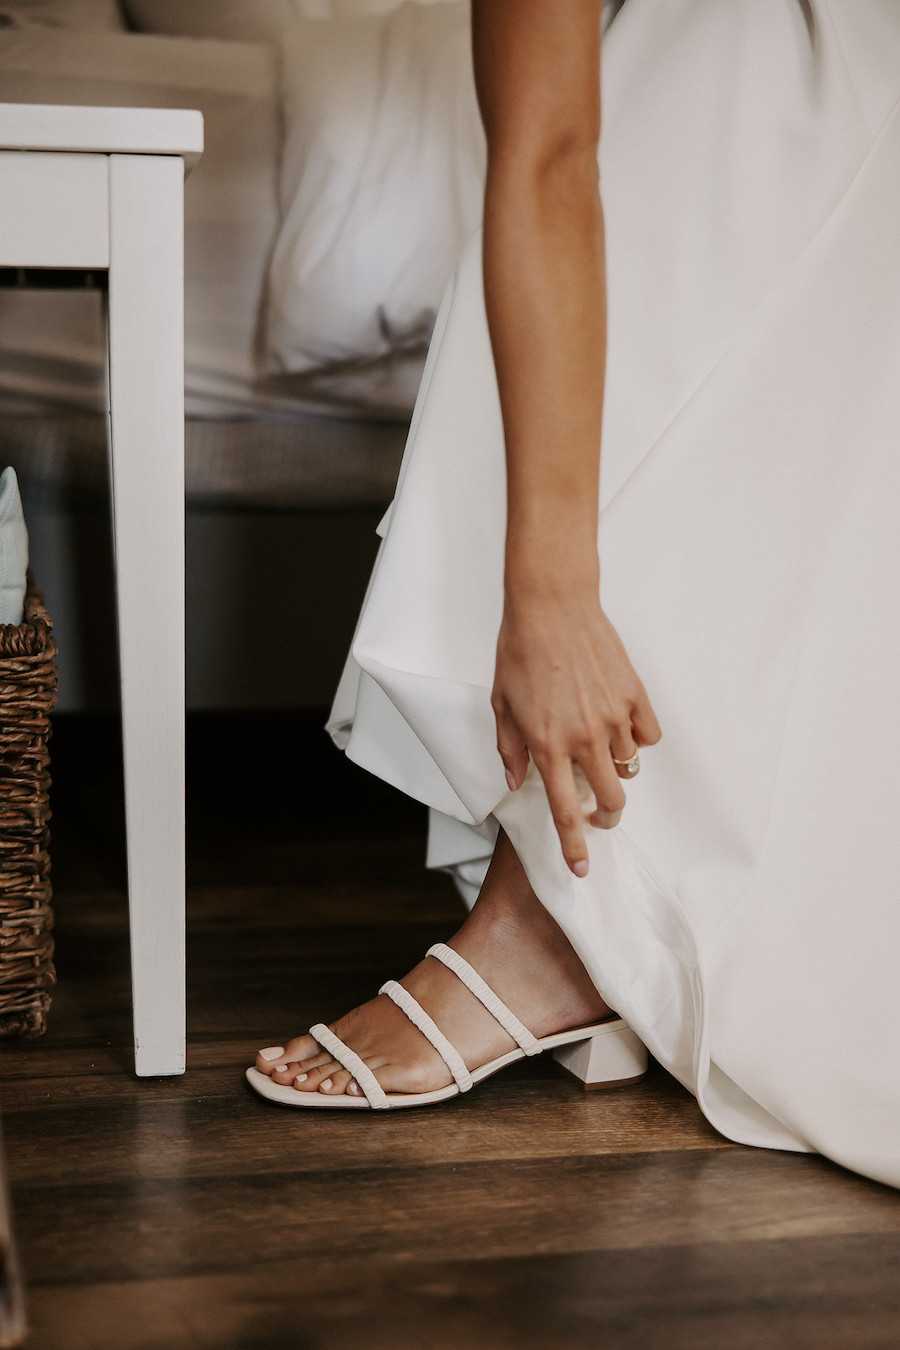 Brautschuhe sind oftmals Sandalen für die Braut